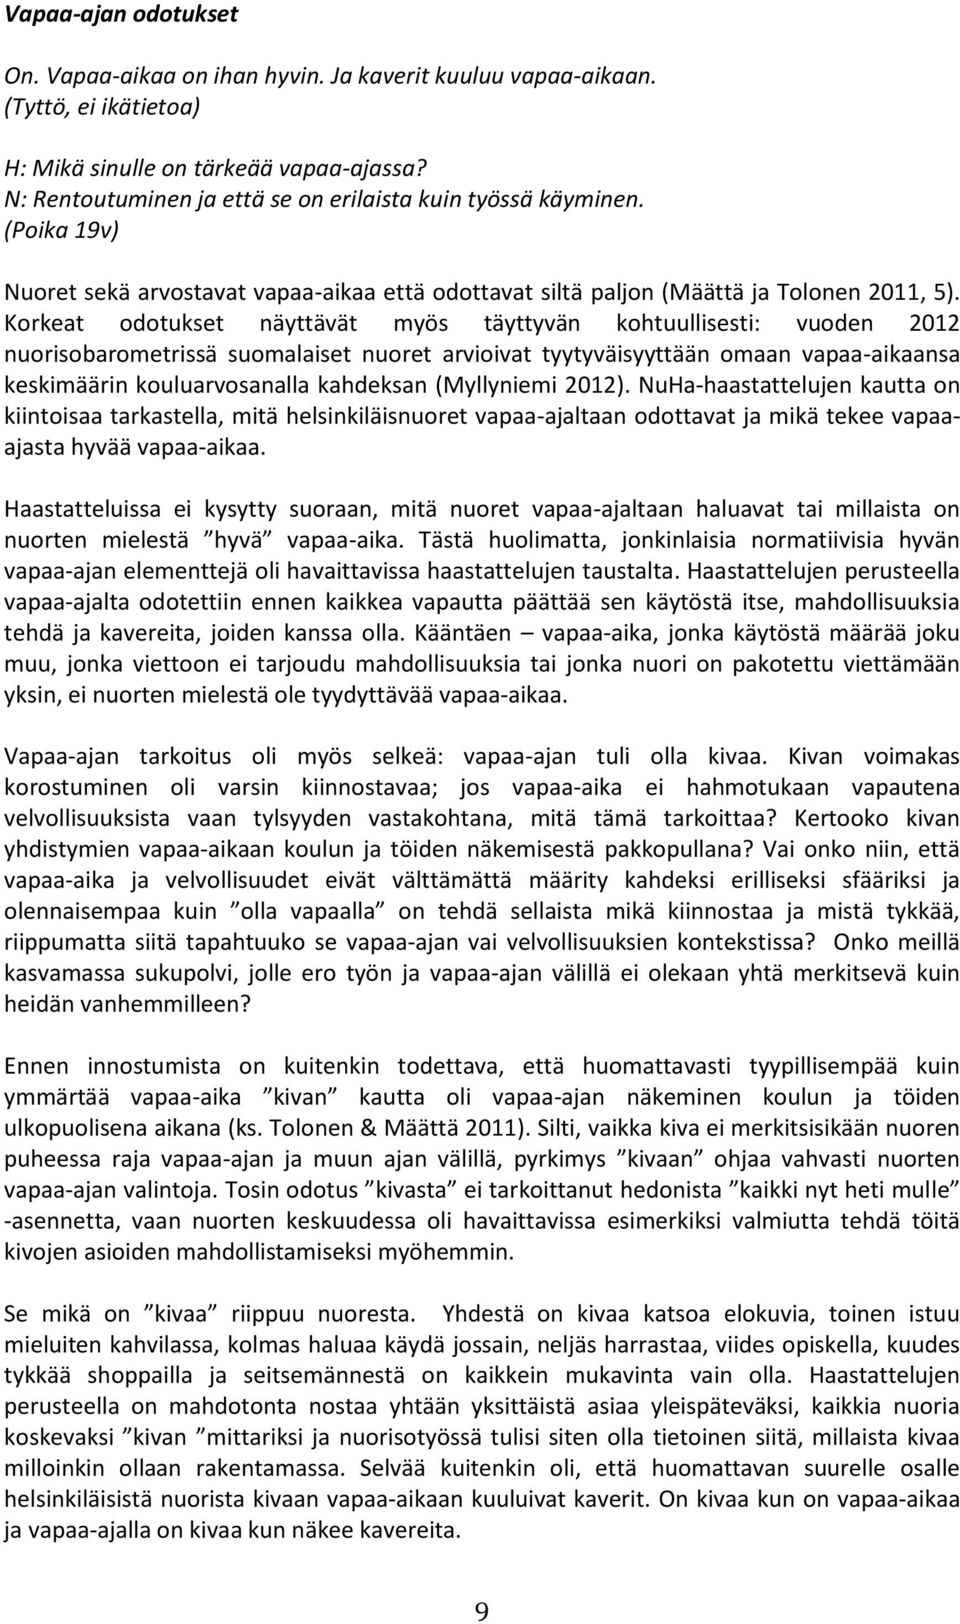 Korkeat odotukset näyttävät myös täyttyvän kohtuullisesti: vuoden 2012 nuorisobarometrissä suomalaiset nuoret arvioivat tyytyväisyyttään omaan vapaa-aikaansa keskimäärin kouluarvosanalla kahdeksan